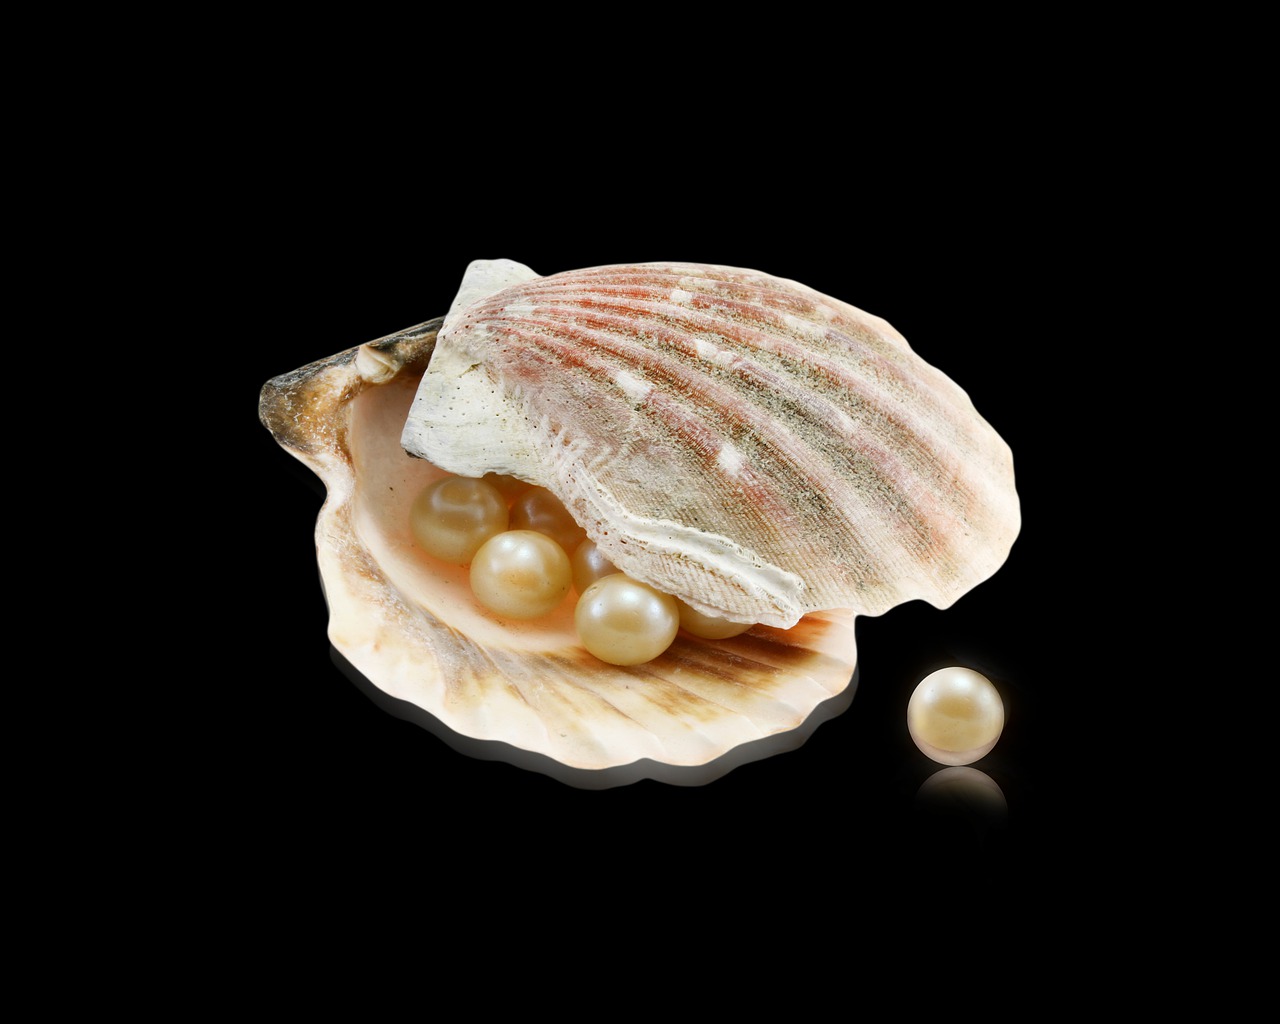 das Bild zeigt auf schwarzem Grund eine geöffnete Muschel mit herausfallenden Perlen